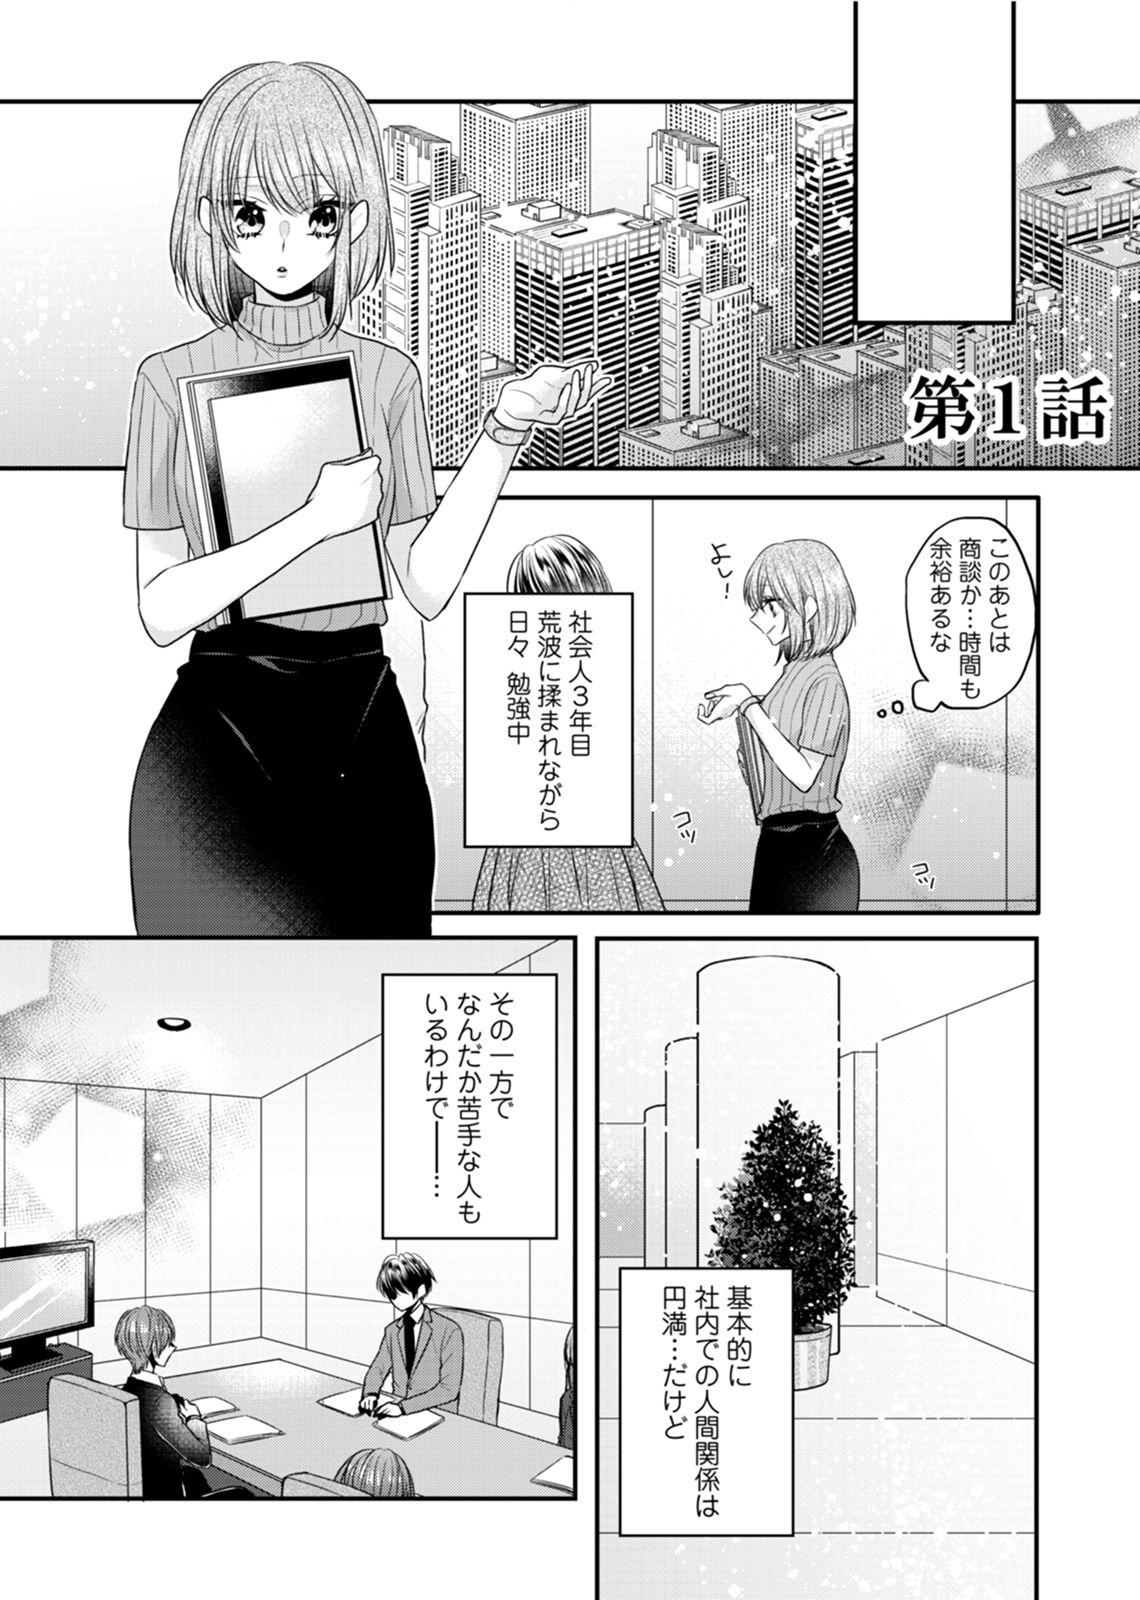 [Kecha] Zangyou Ato, Elevator Uchi wa Tsutsushimi ga Nai. ~Ore no Honshou, Kizuichatta?~ Ch. 1-2 4